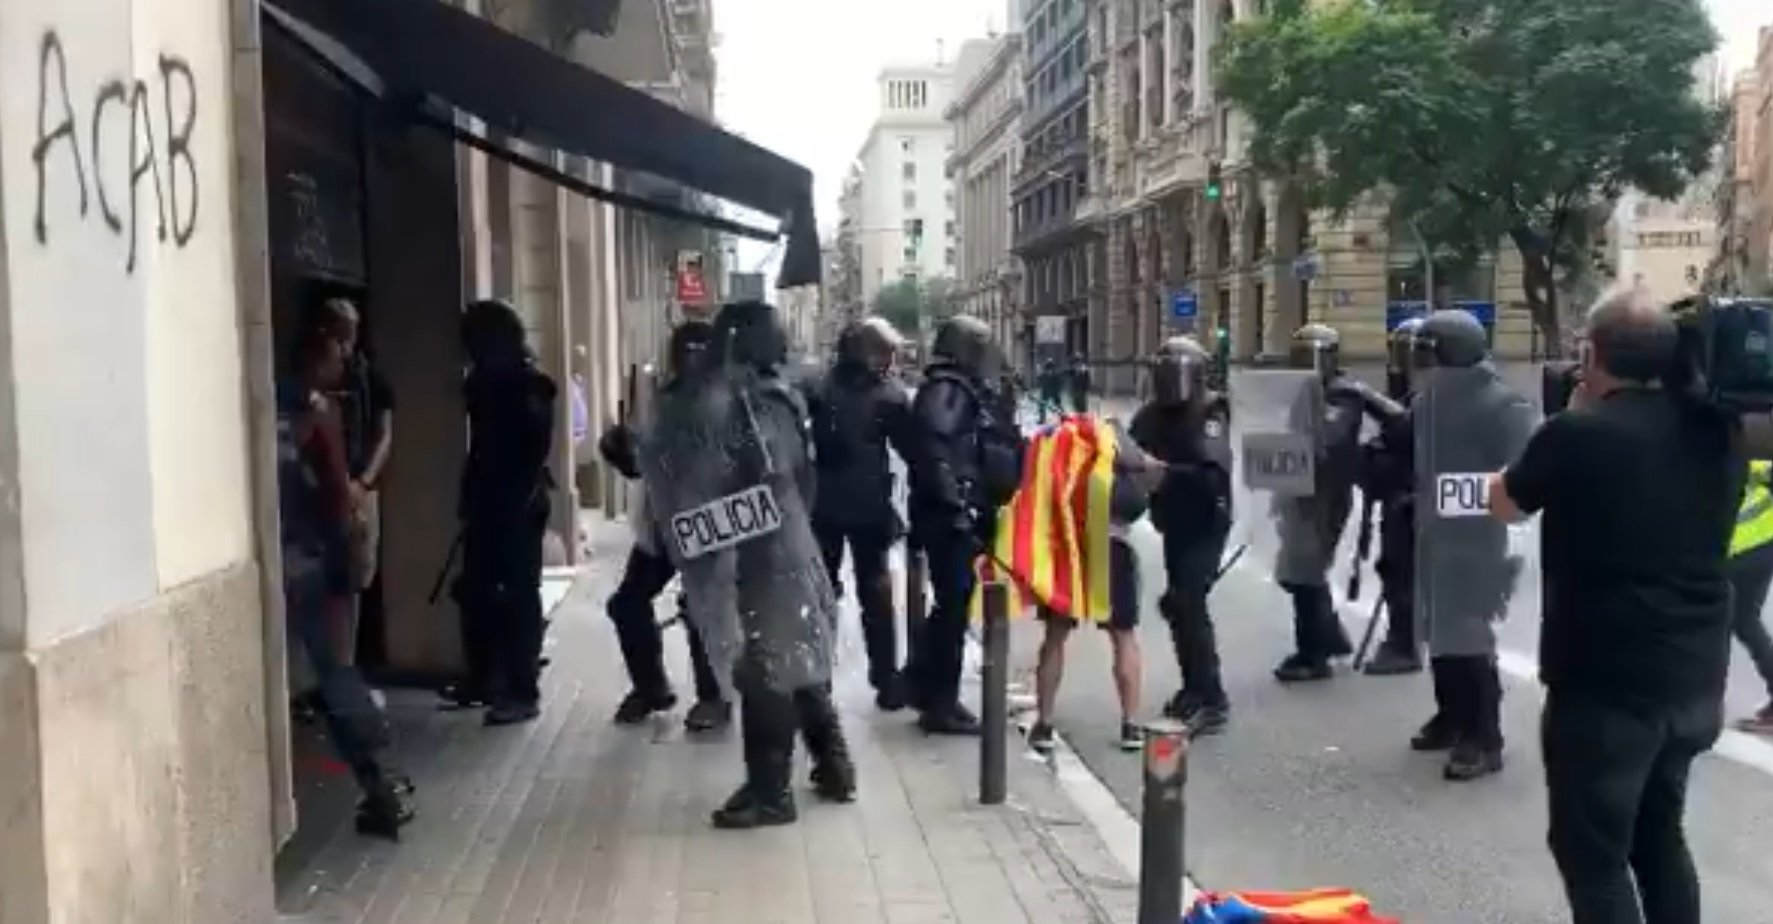 La policia espanyola colpeja i humilia un estudiant a Via Laietana